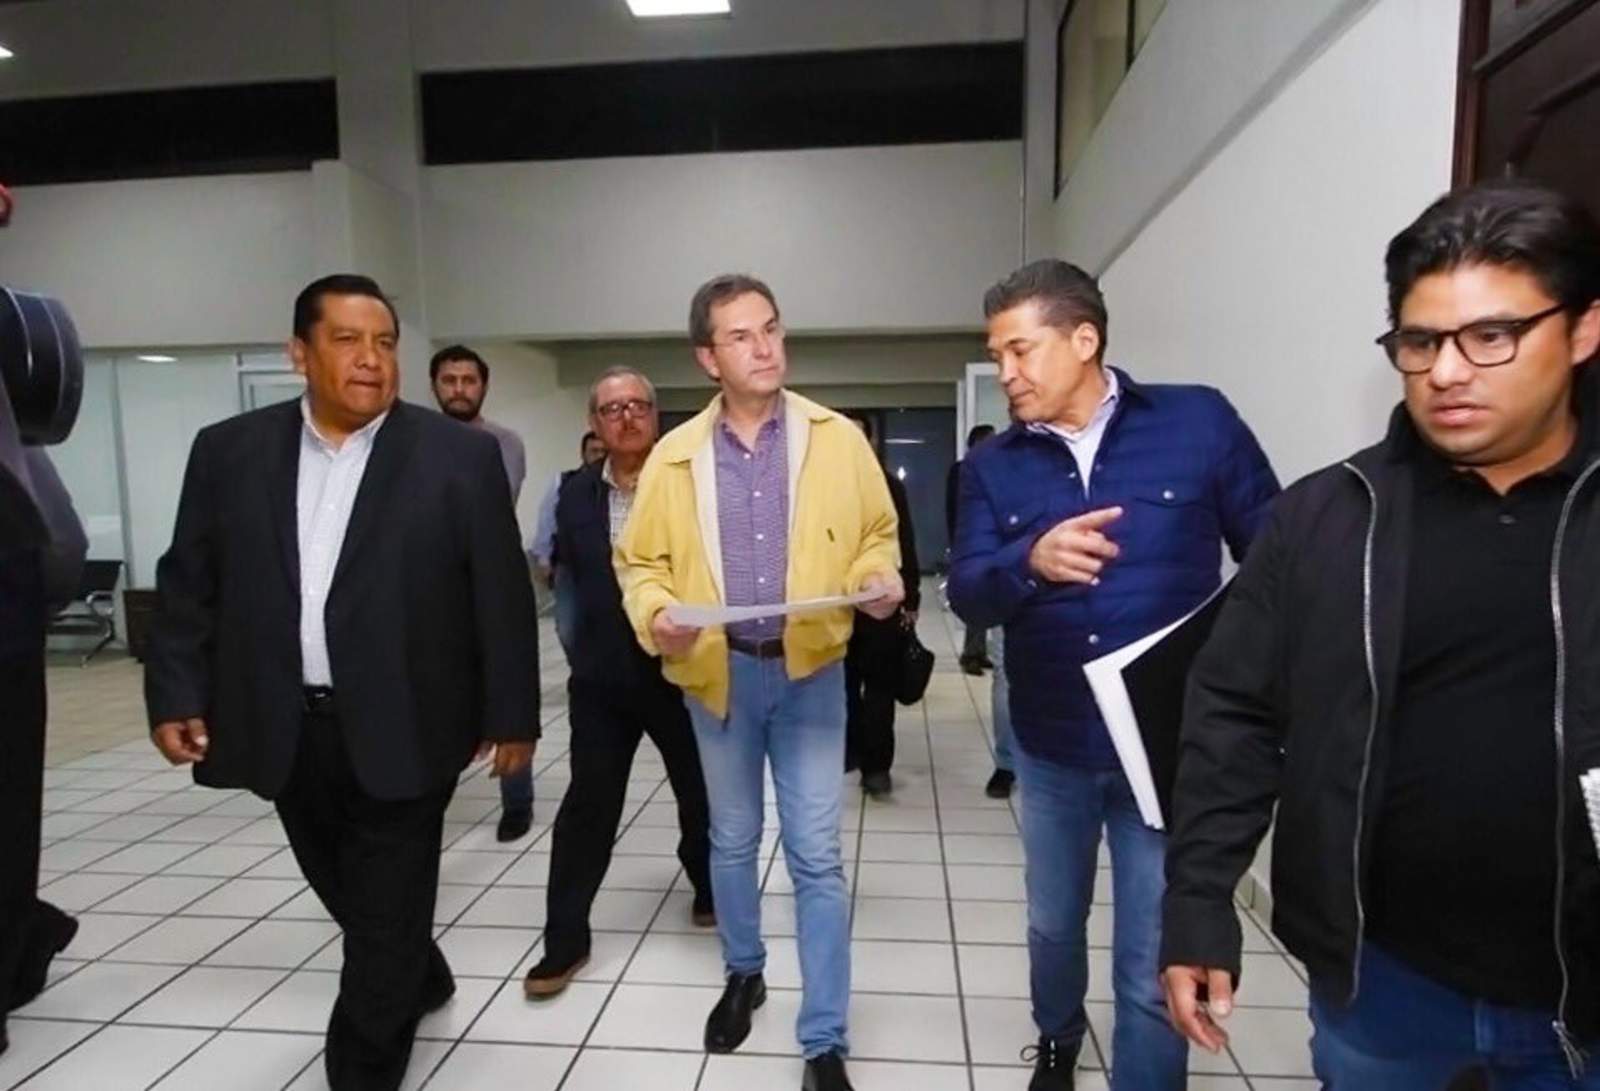 La Secretaría de Educación Pública (SEP) inició operaciones en el estado de Puebla, como lo determinó el presidente de la República, Andrés Manuel López Obrador, en el marco de la descentralización de las oficinas federales. (TWITTER)